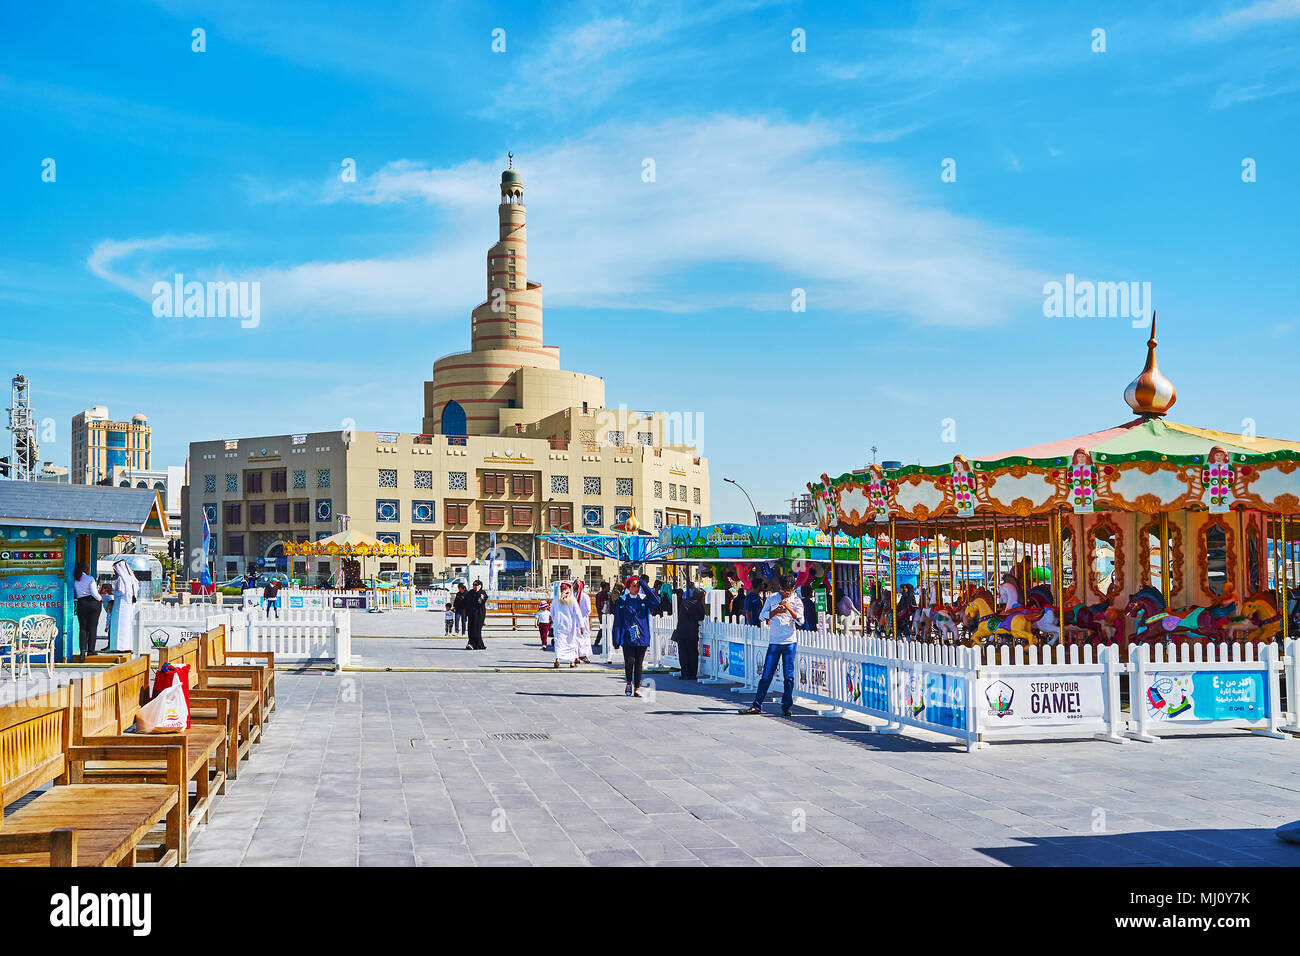 DOHA, QATAR - février 13, 2018 : La rue de Al Tahliya carrousels de district avec le Luna Park et la ville pittoresque de construction de mosquée Al Fanar sur le backgrou Banque D'Images